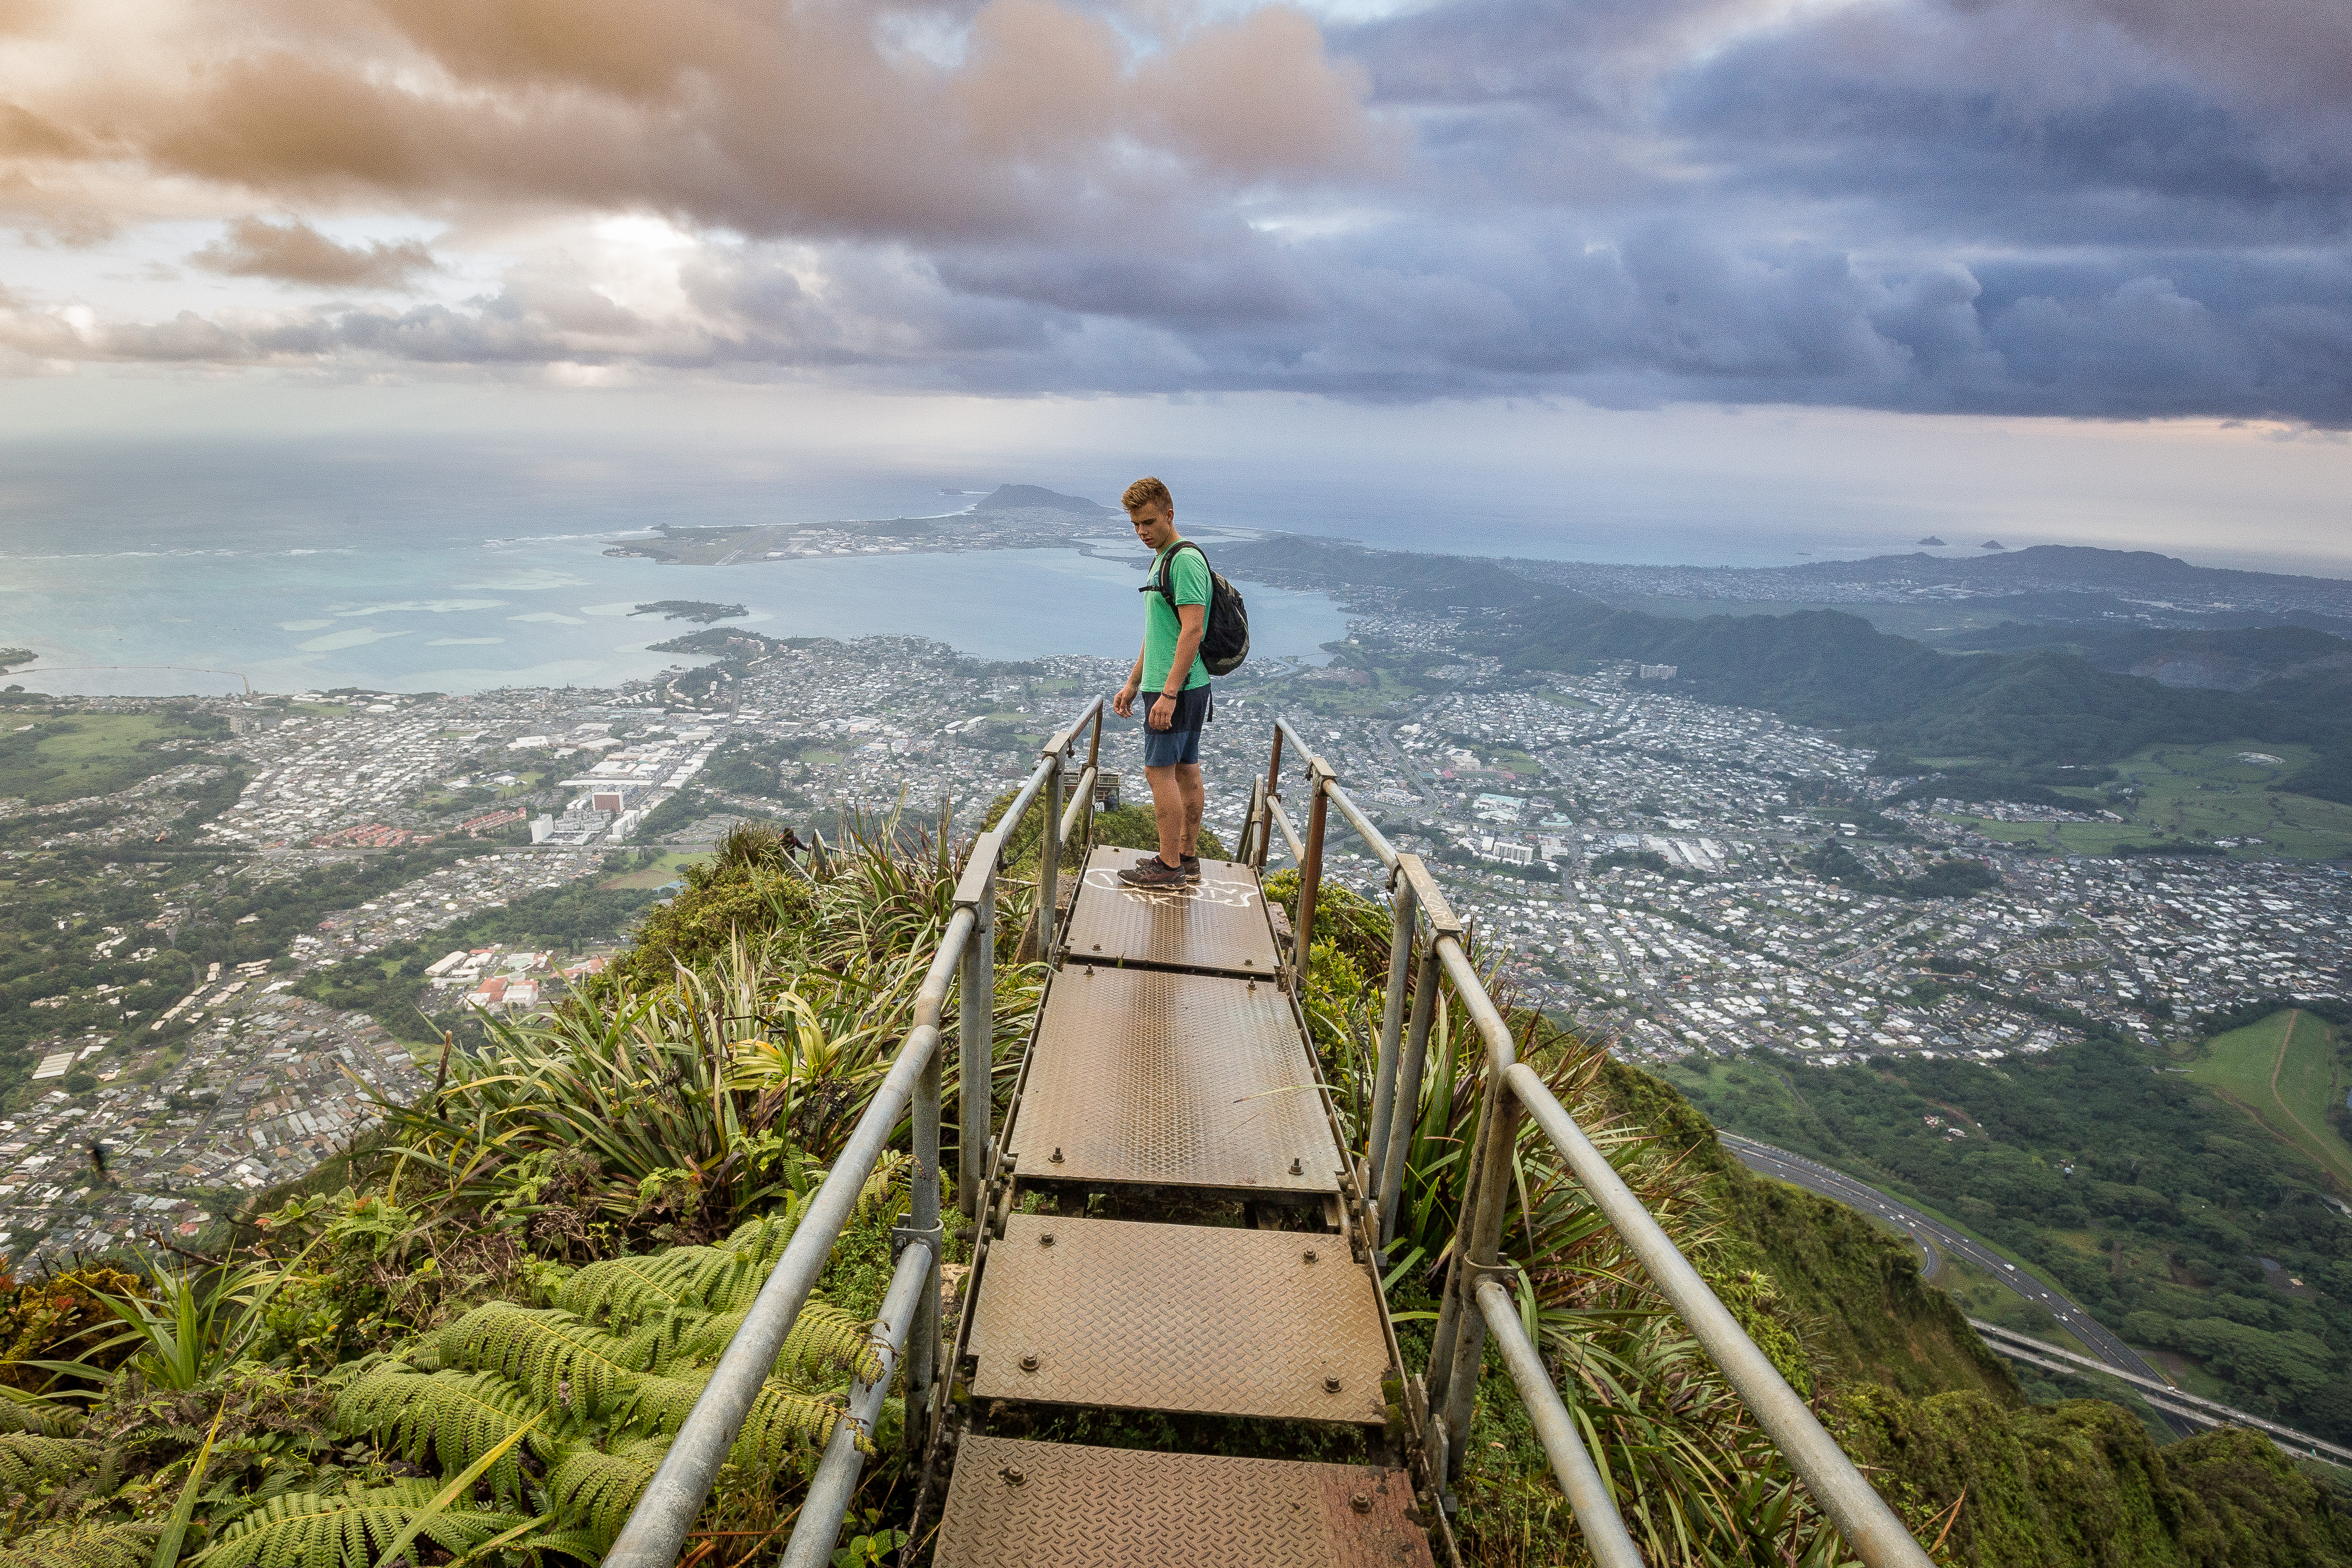 P_Tr_HI_Oahu_Haiku Stairs and Moanalua Ridge Hike_12.12.17-224.jpg